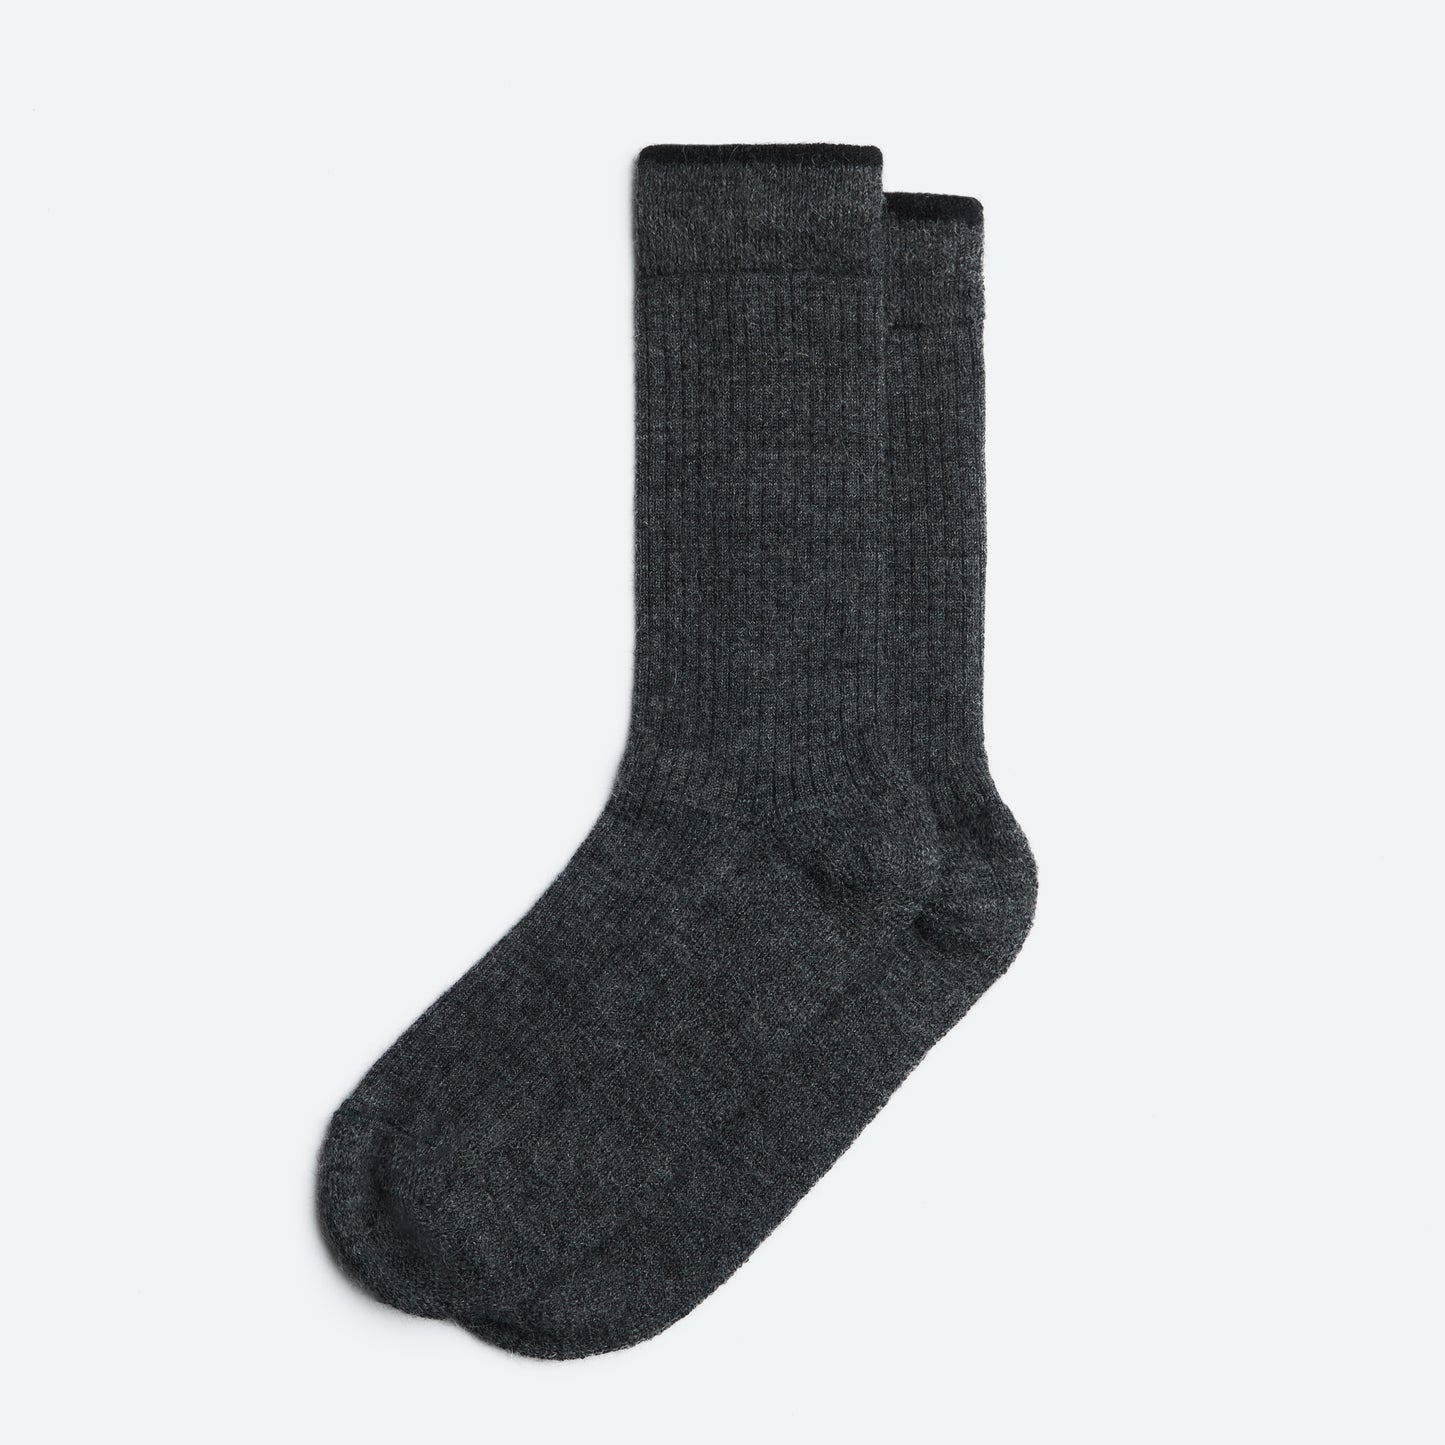 ALPAKA - Fine Socks - NEW